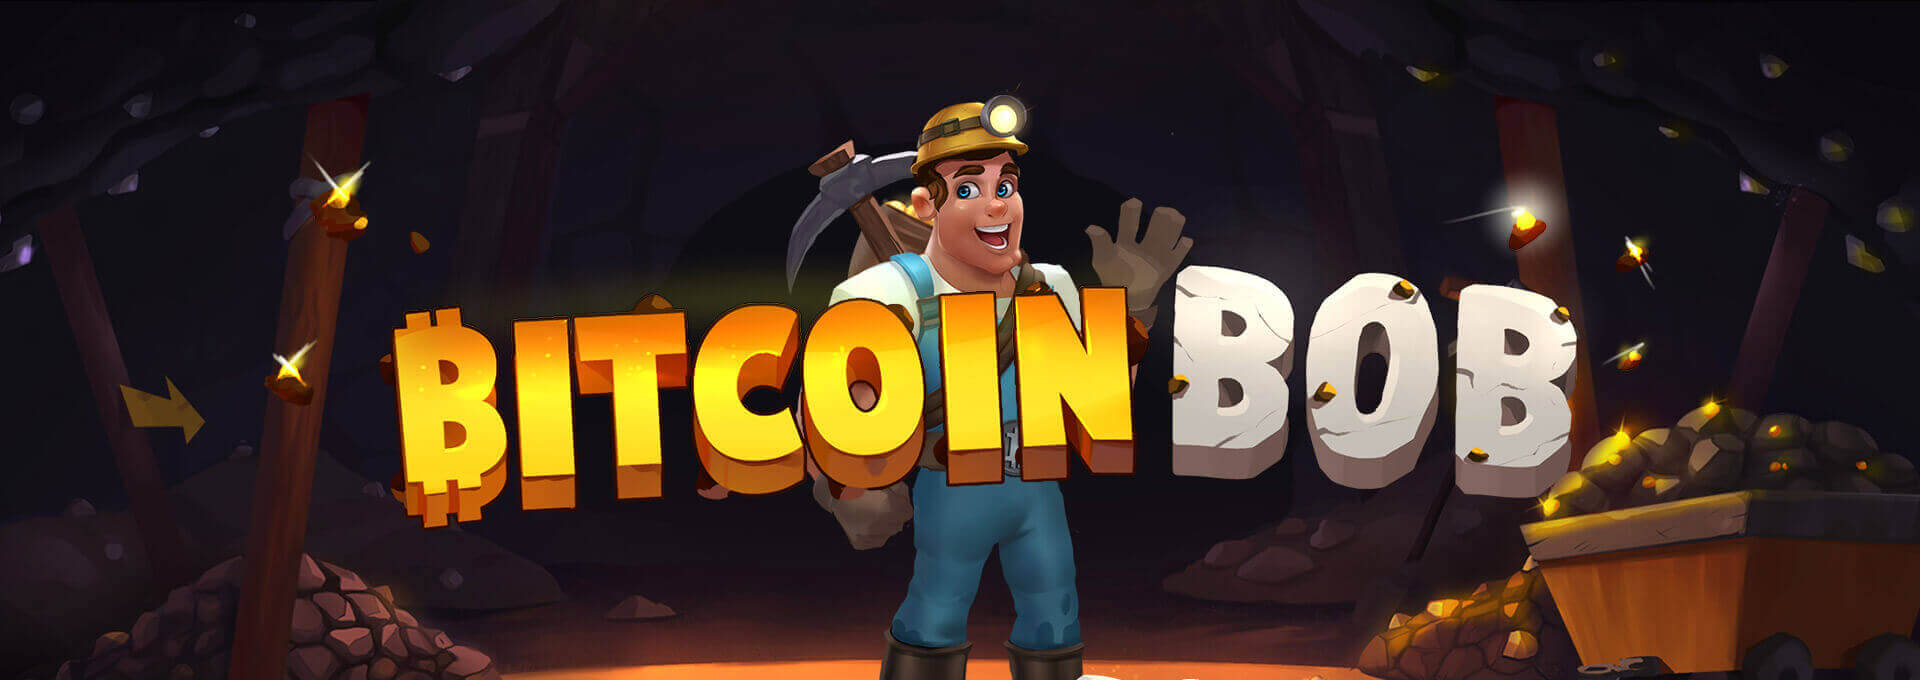 Bitcoin Bob slots game